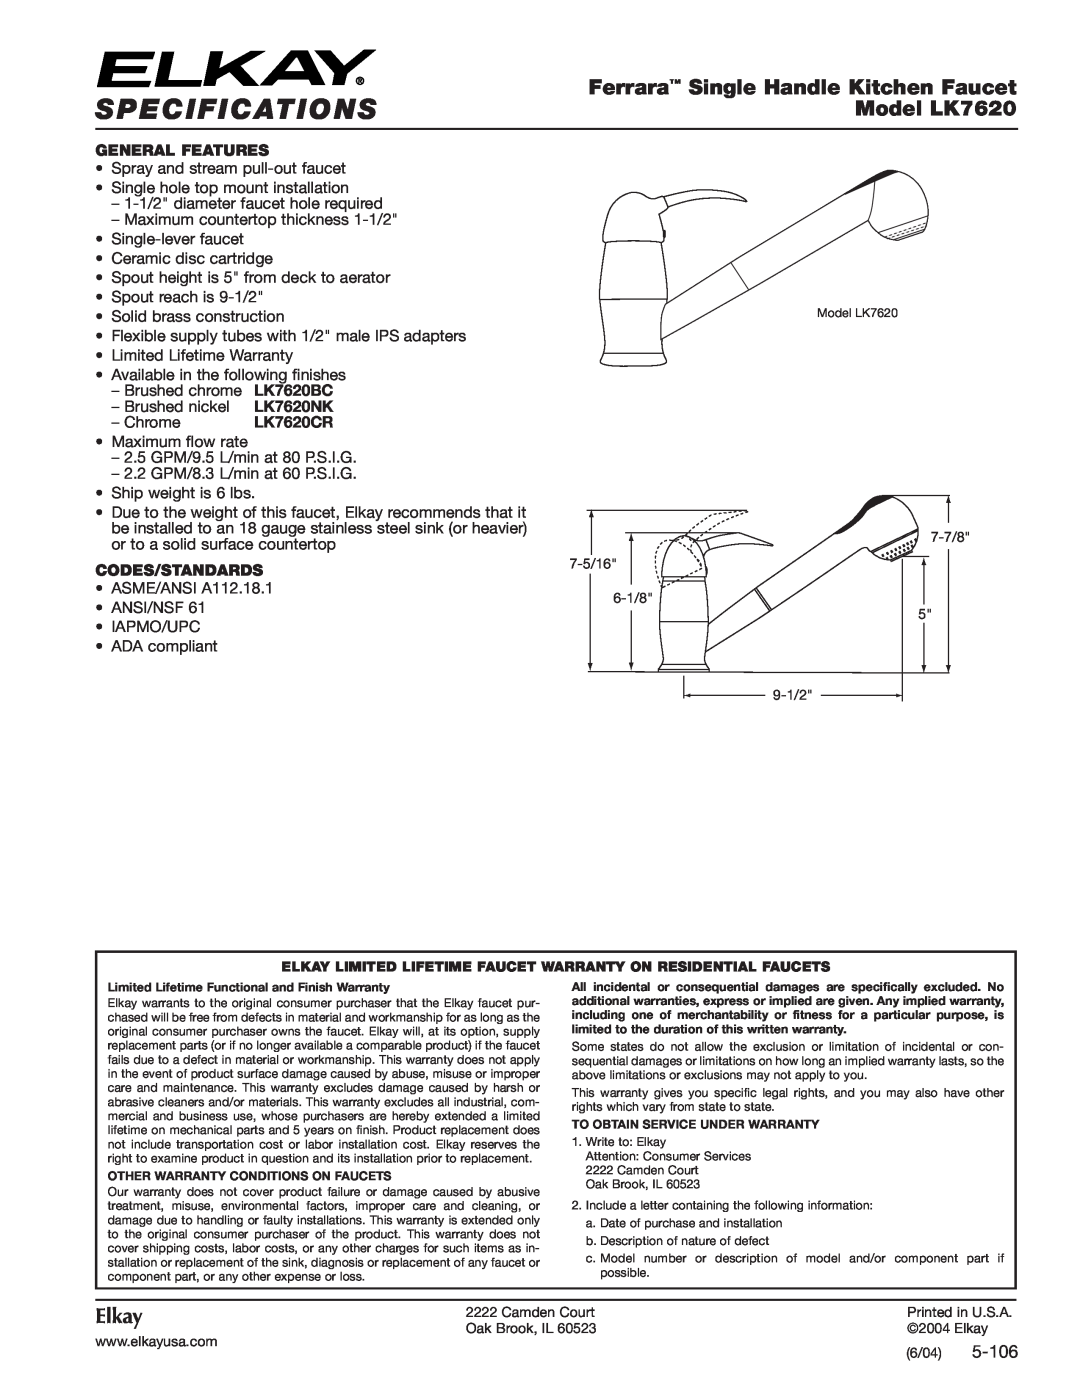 Elkay LK7620BC specifications Specifications, Ferrara Single Handle Kitchen Faucet, Model LK7620, Elkay, 5-106, LK7620NK 